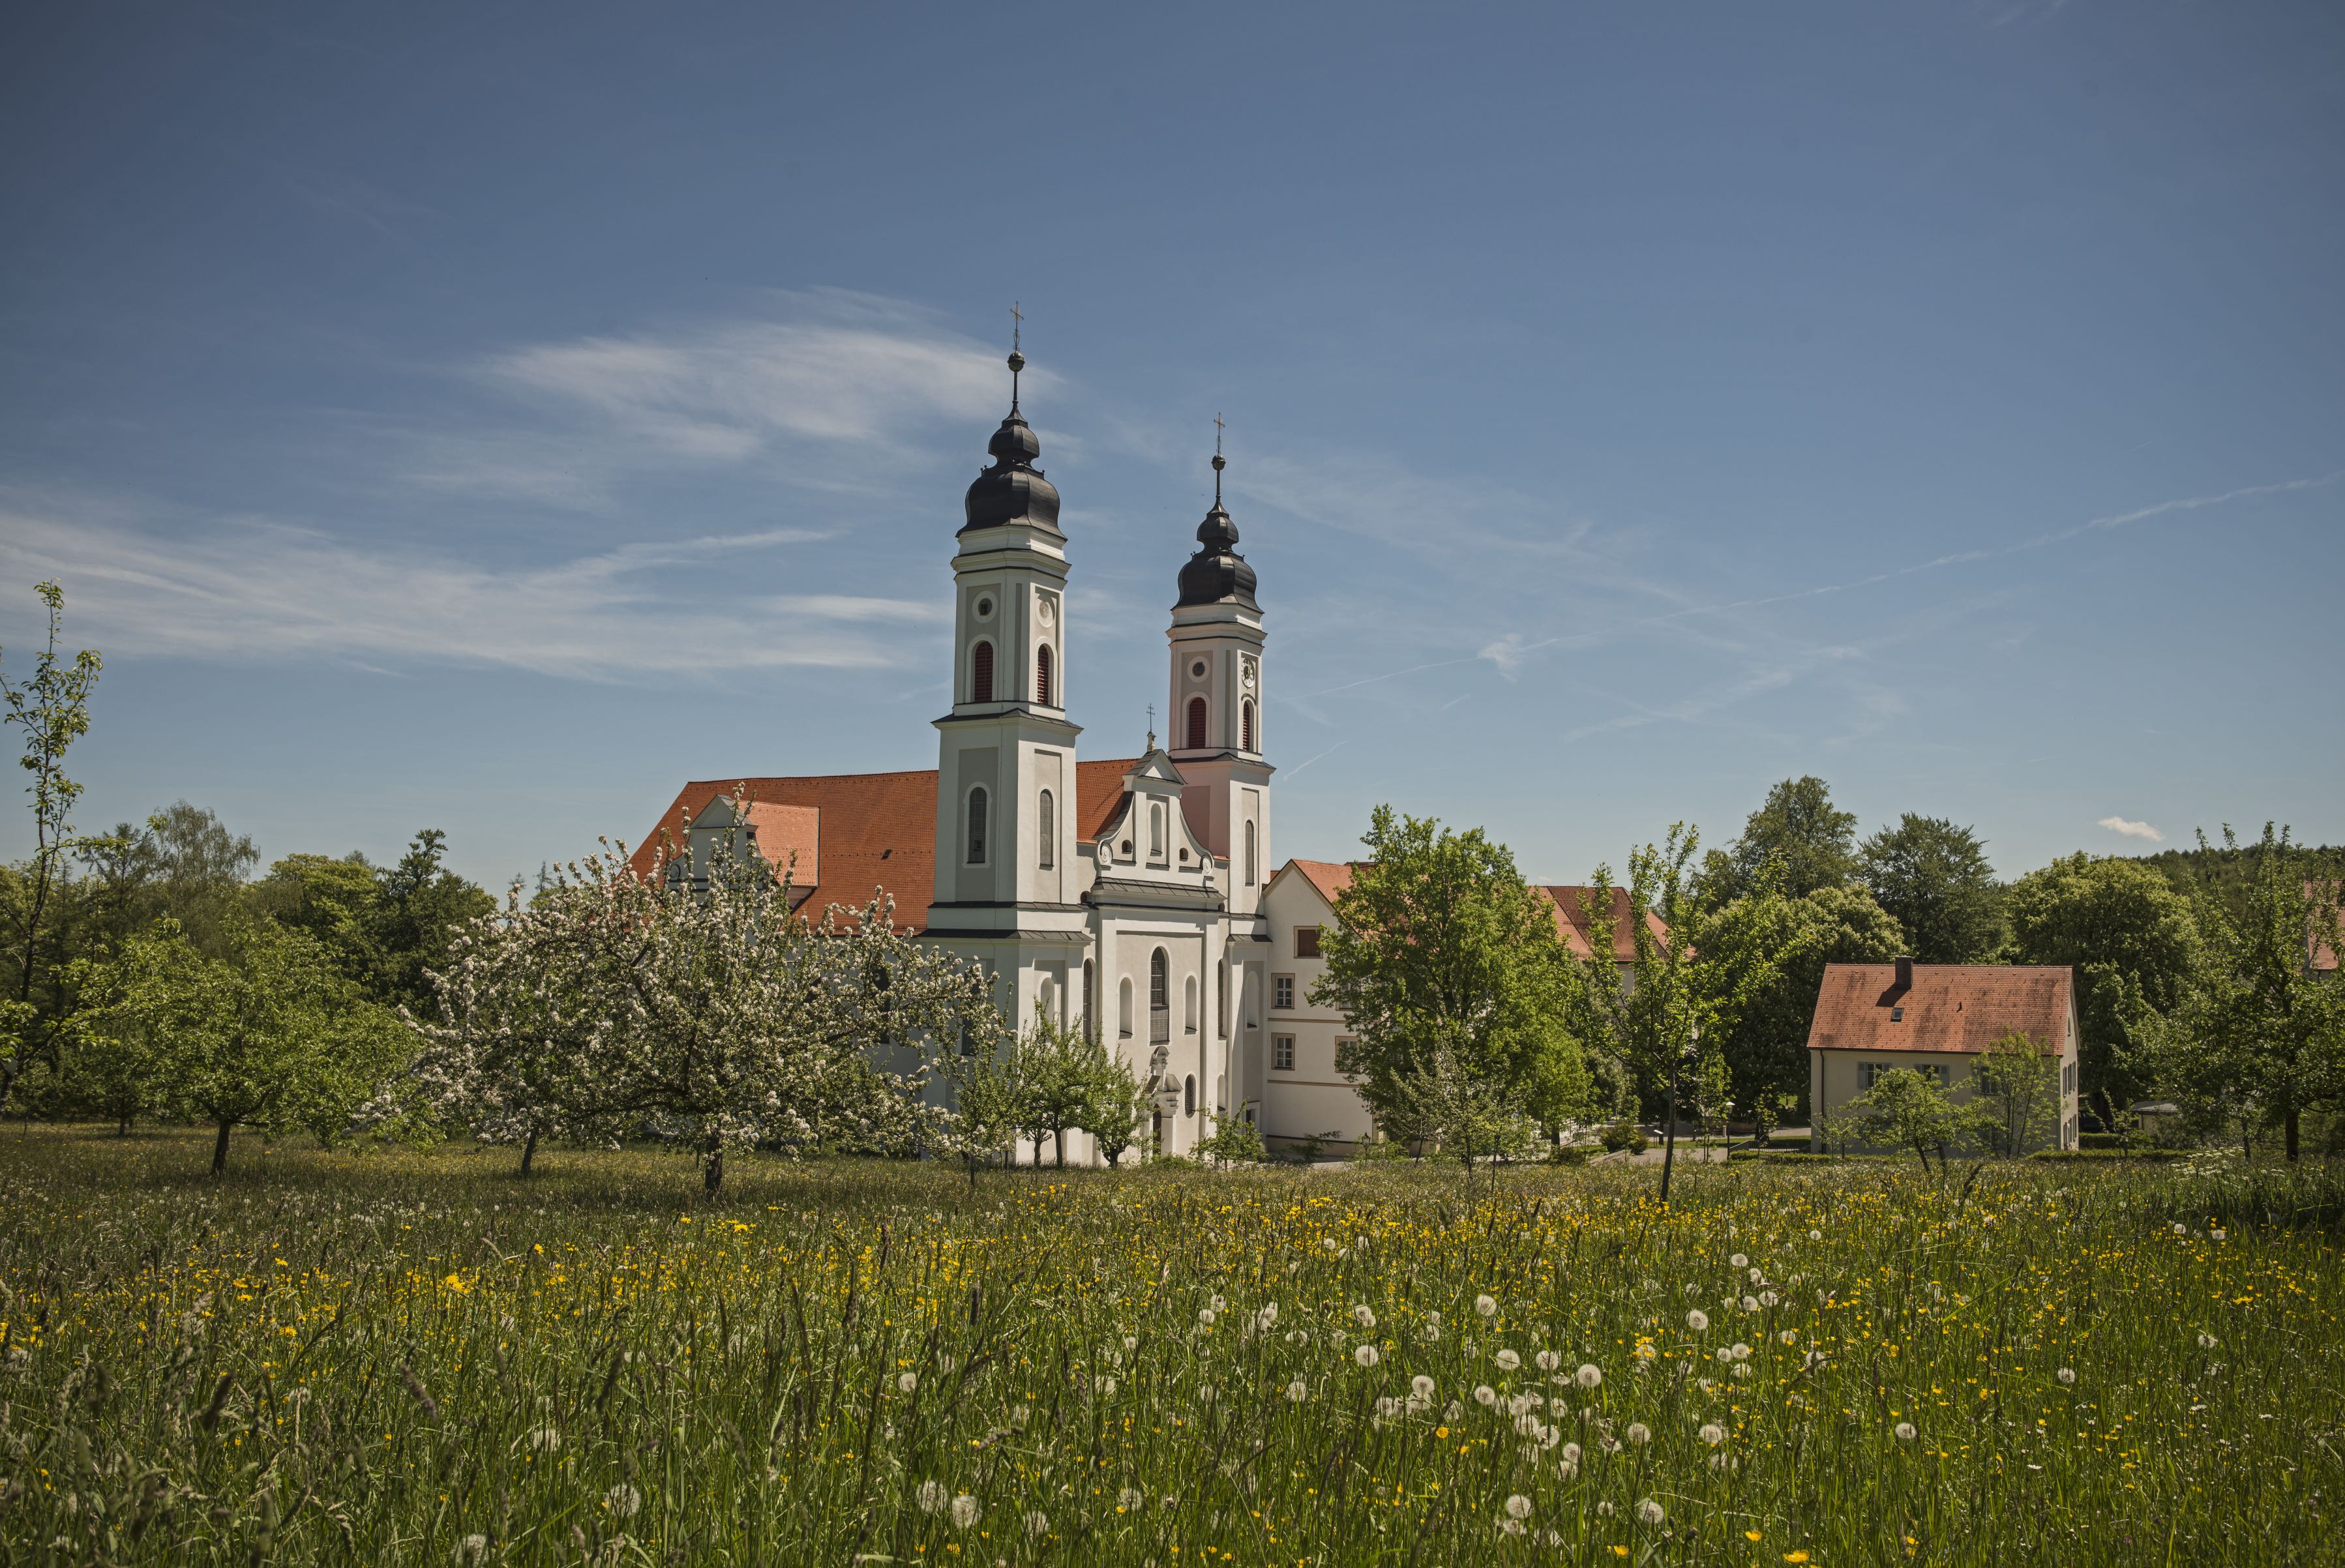 Gartentage im barocken Kleinod Kloster Irsee